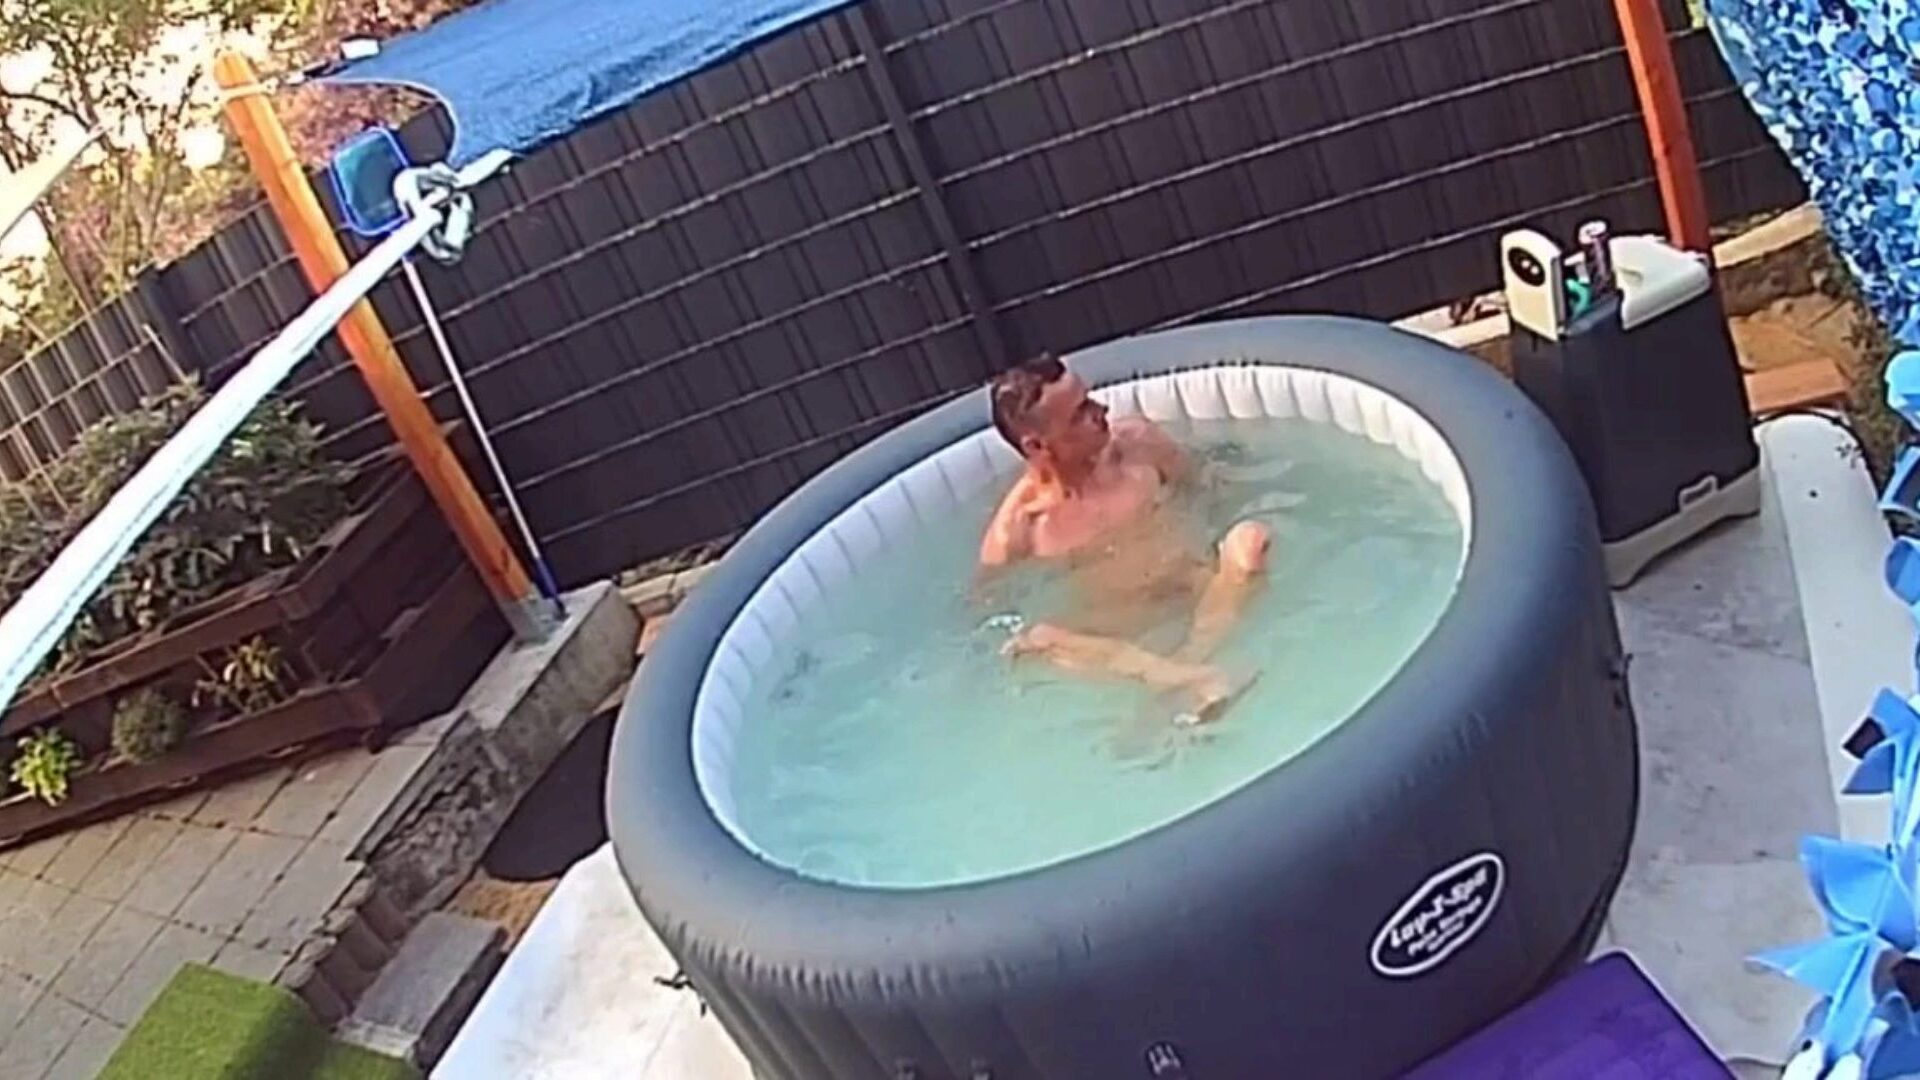 verstecke kamera: nachbarn im pool ausspioniert